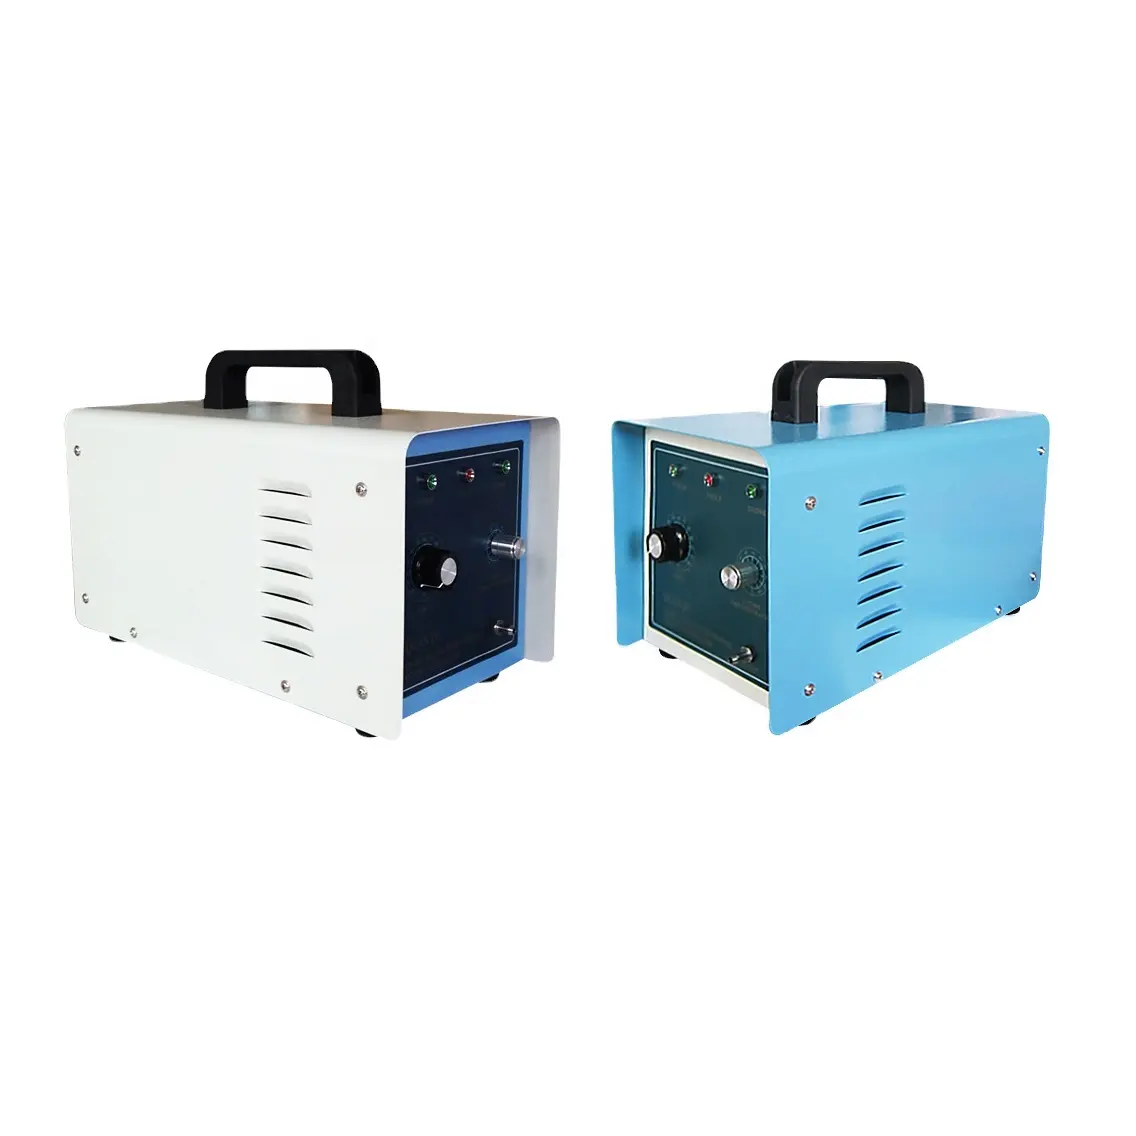 BSOG tragbarer 2 g haushalts-Ozongenerator für Luft-Wasser-Reinigung